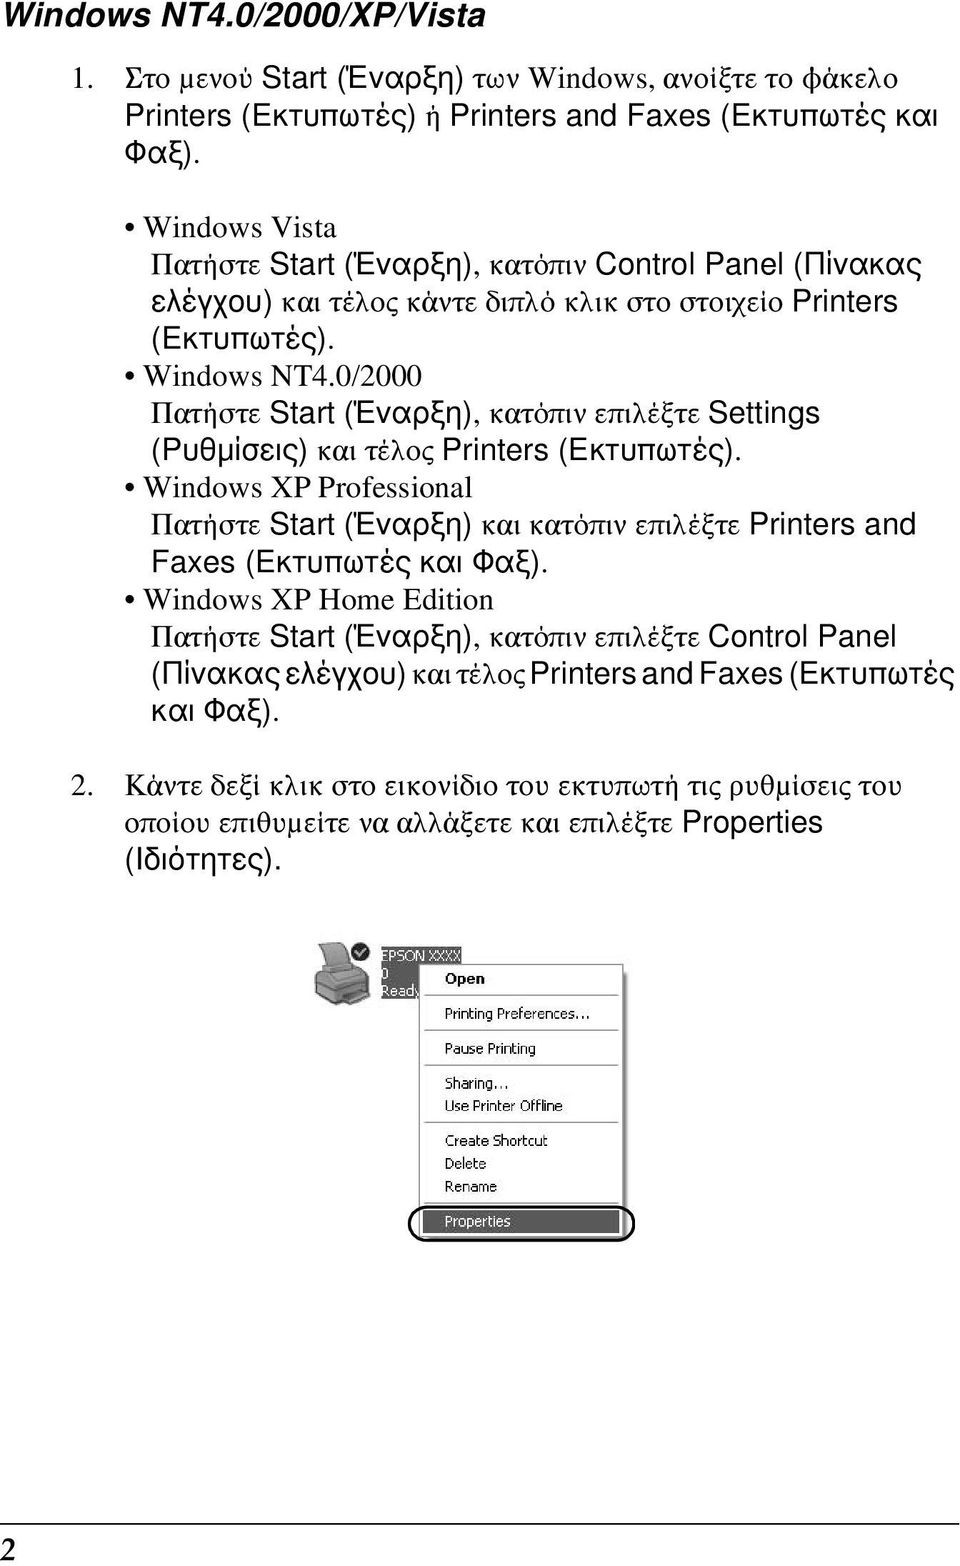 0/2000 Πατήστε Start (Έναρξη), κατόπιν επιλέξτε Settings (Ρυθμίσεις) και τέλος Printers (Εκτυπωτές).